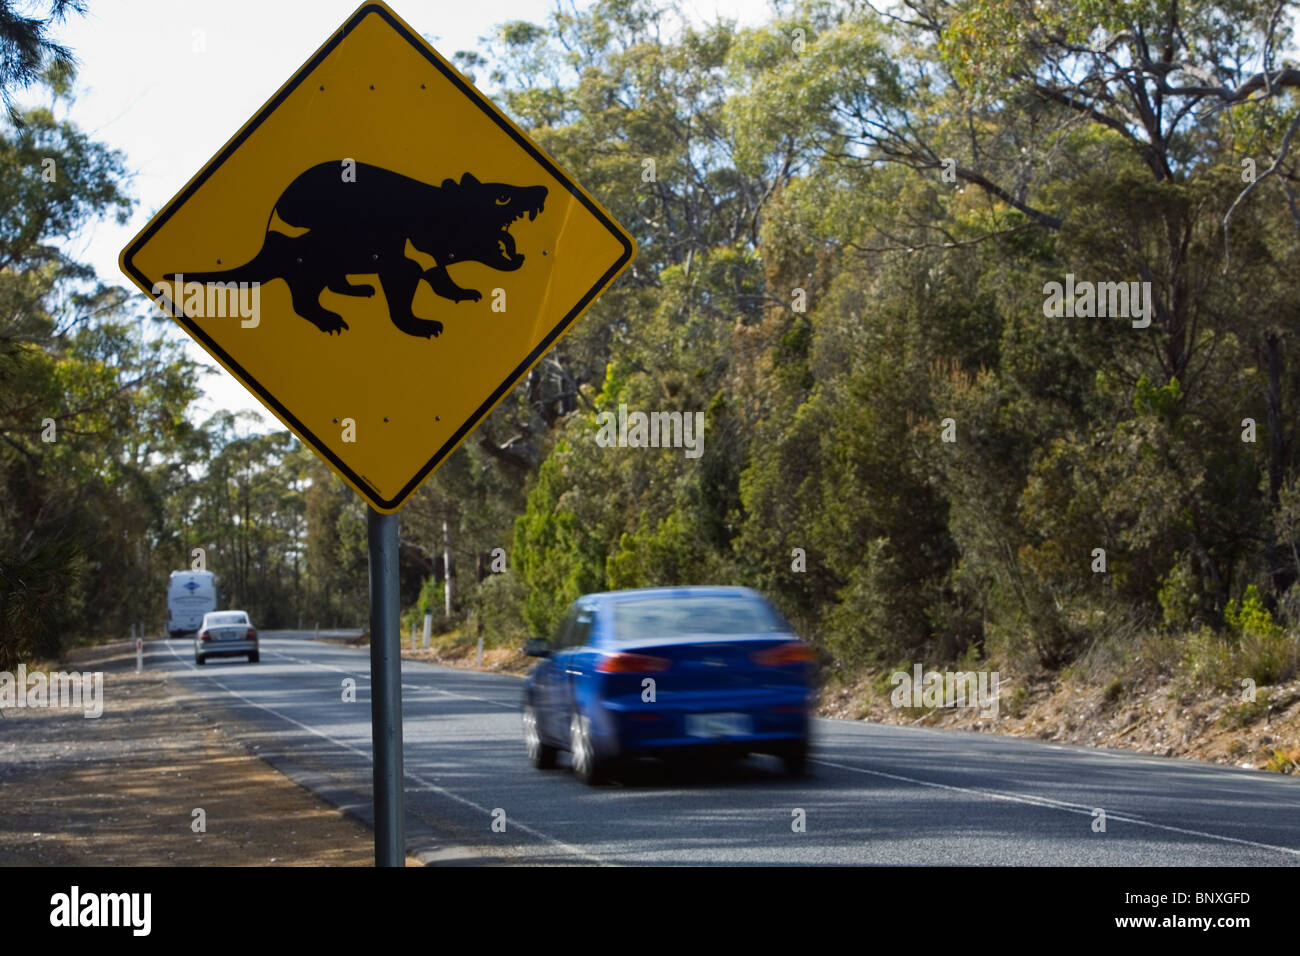 Diable de Tasmanie panneau routier. La Tasmanie, Australie Banque D'Images